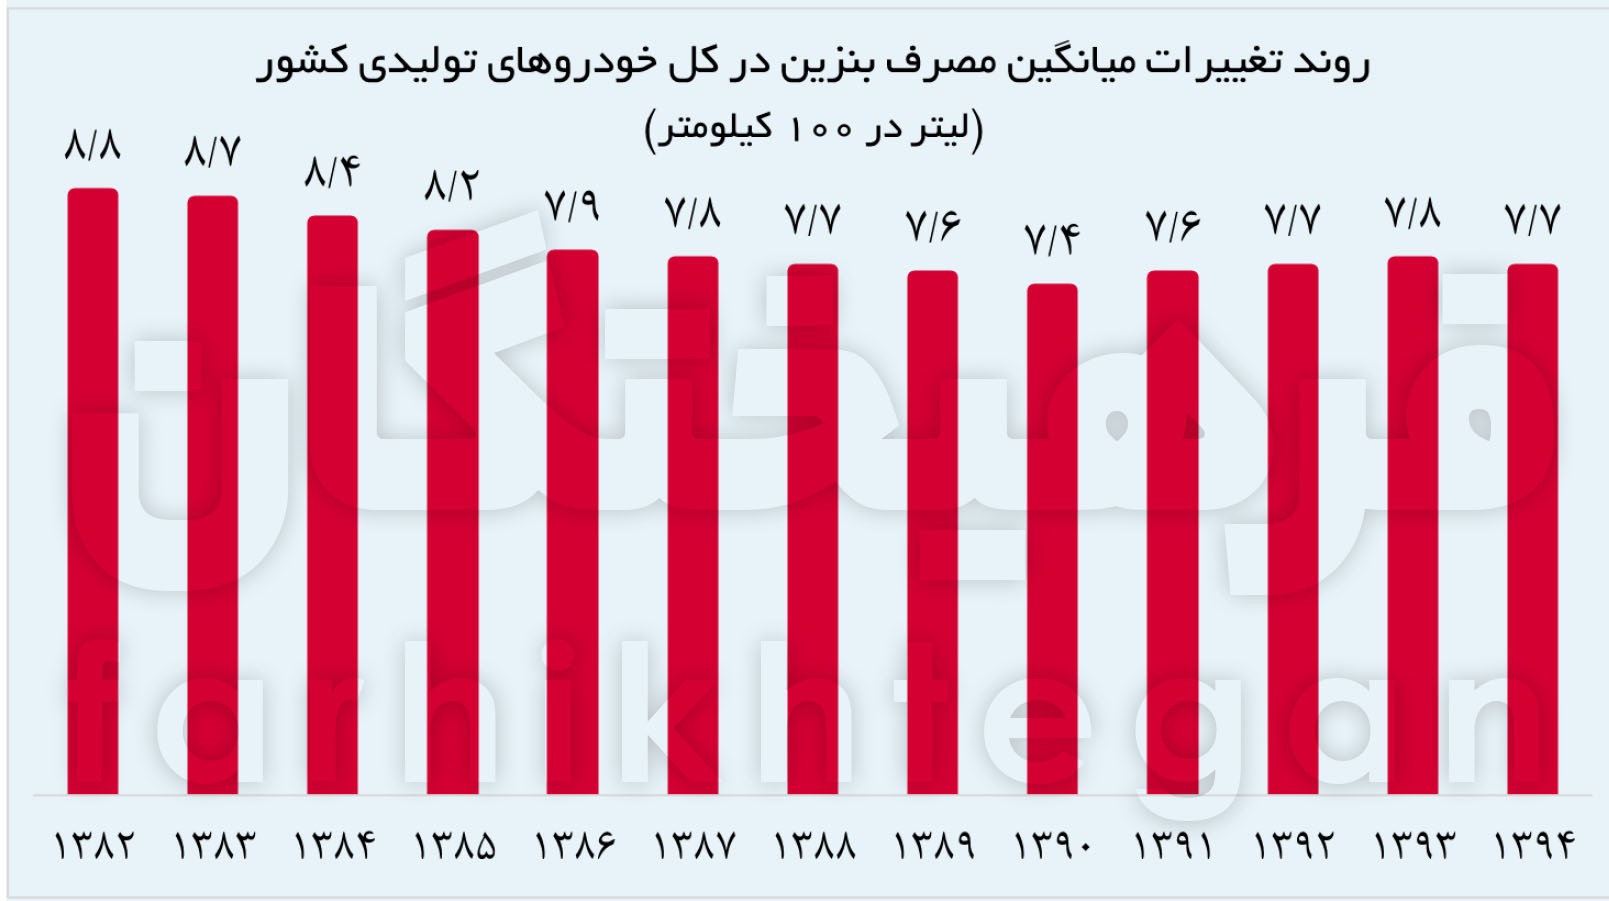 ۶۲ درصد خودروهای ایران پرمصرفند؛ چرا واردات خودروهای باکیفیت ضروری است؟